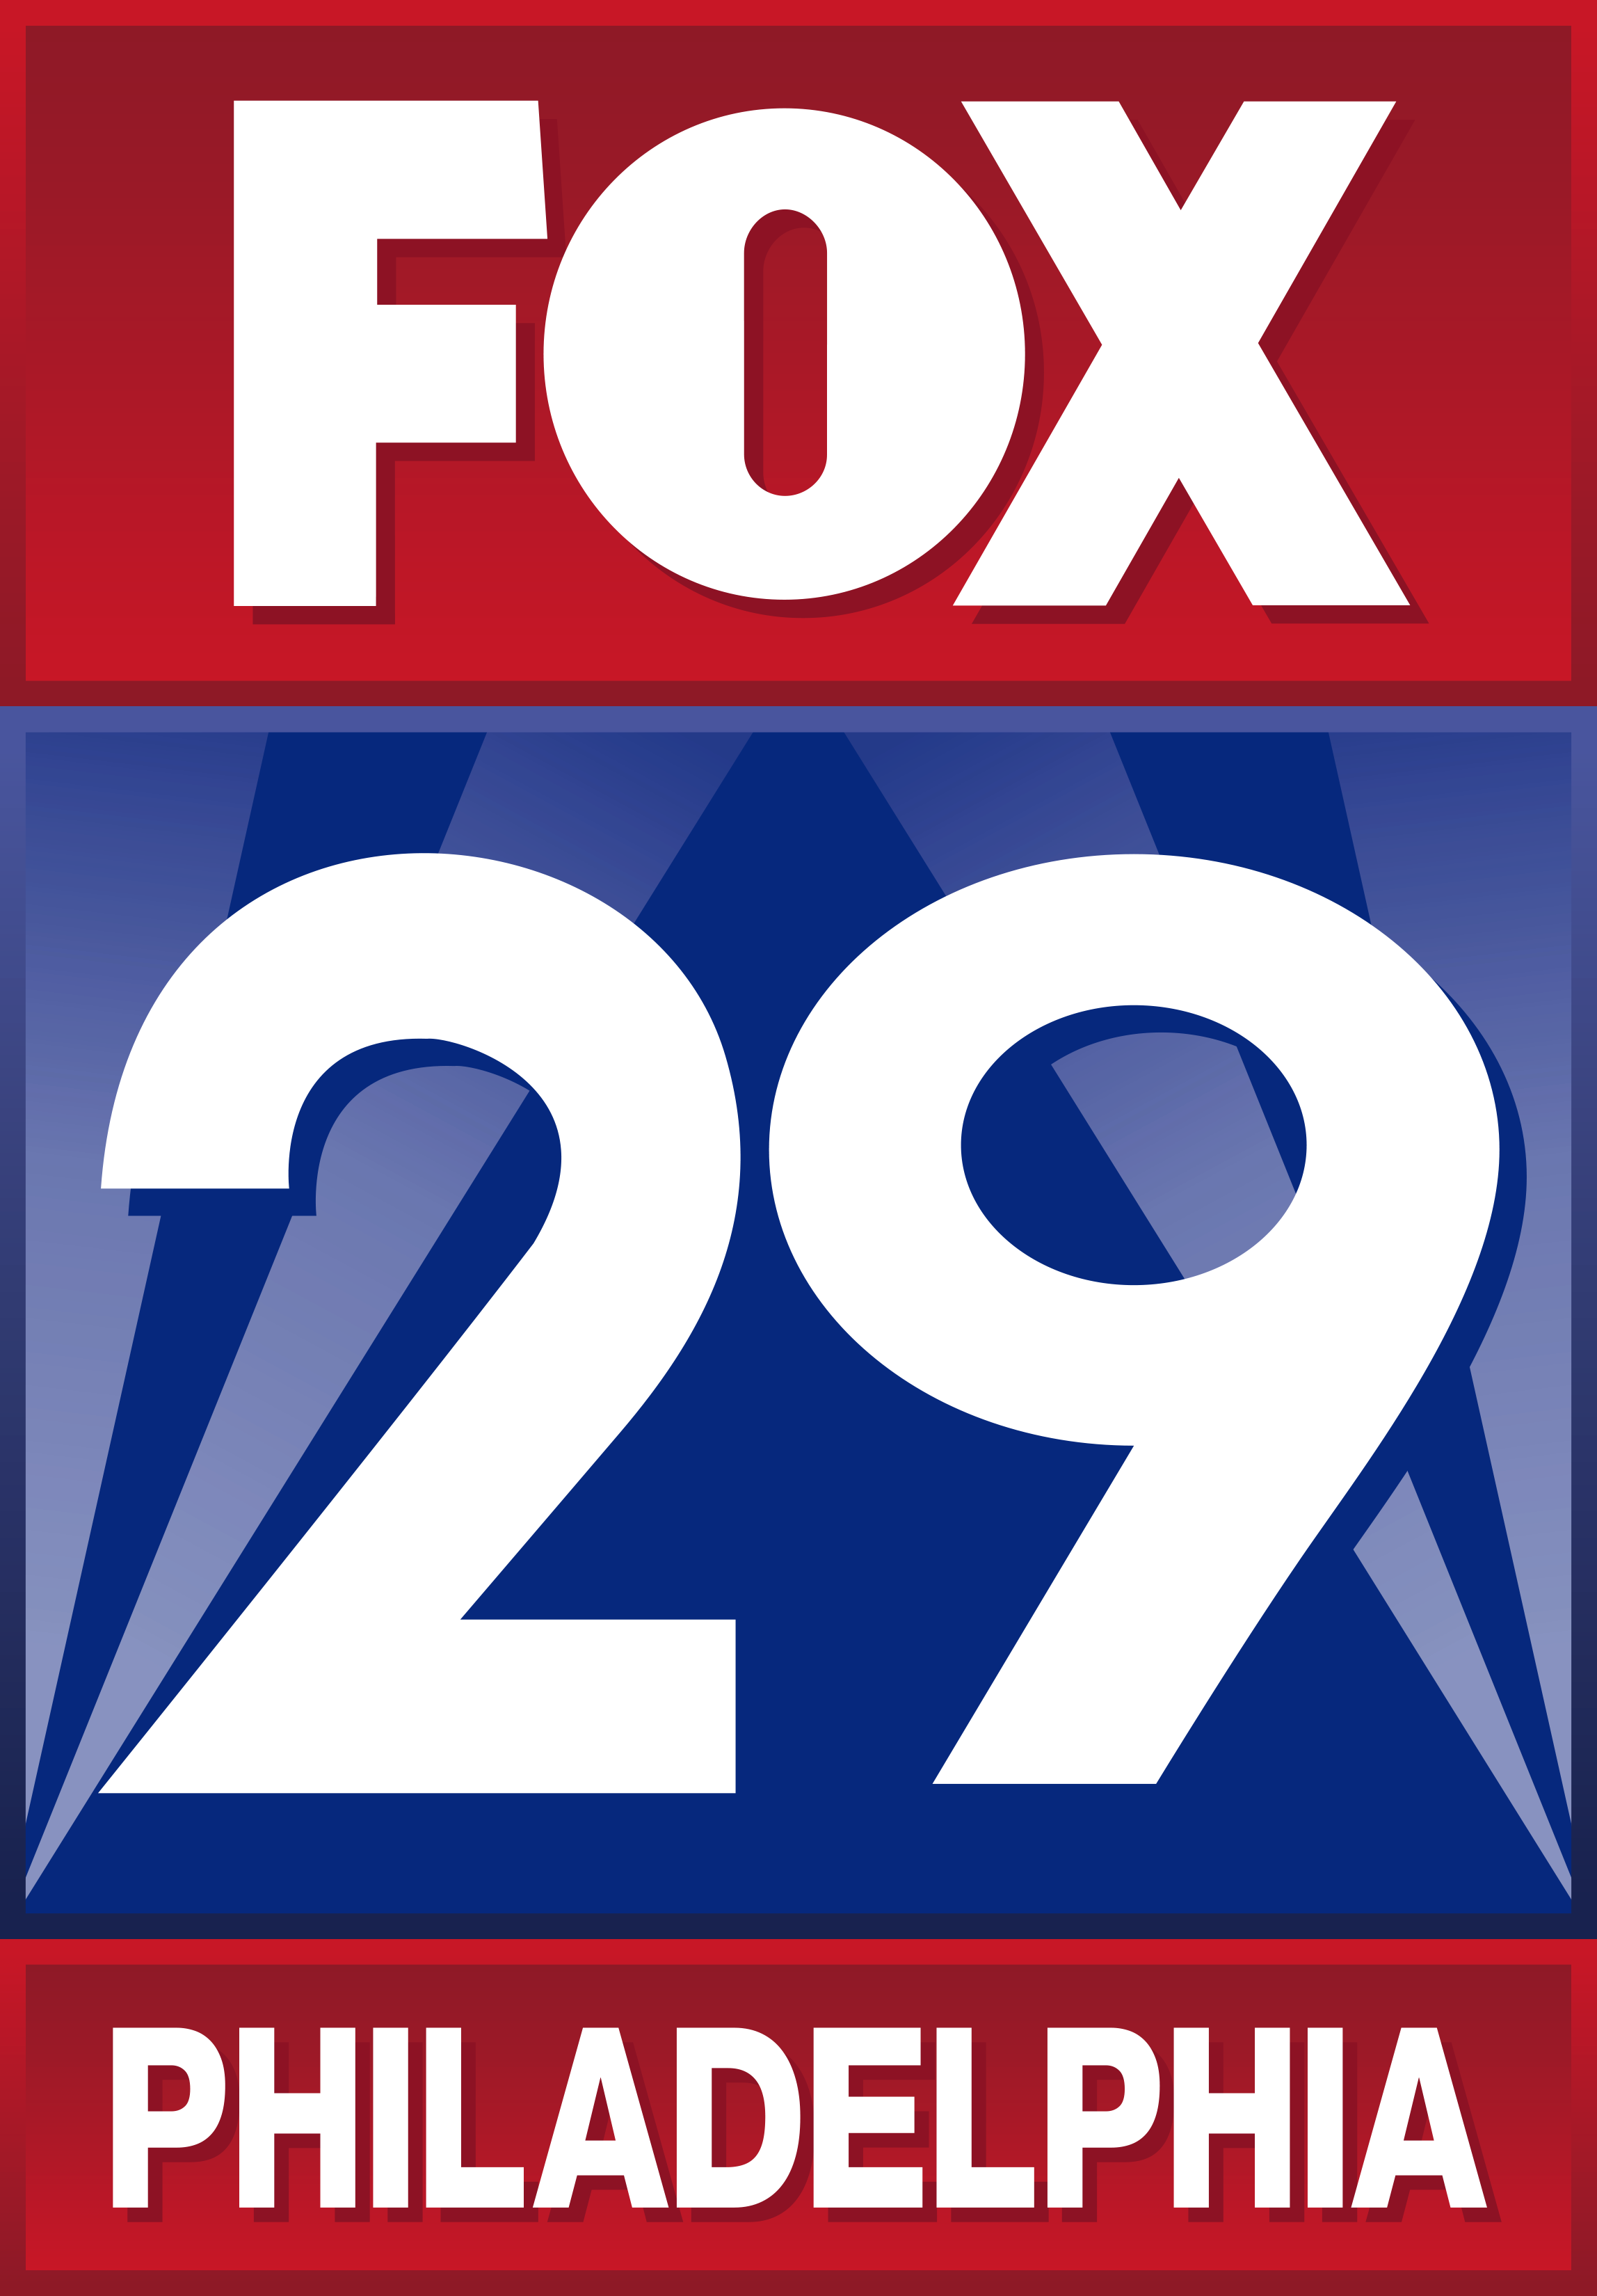 E. Fox29 (Media)